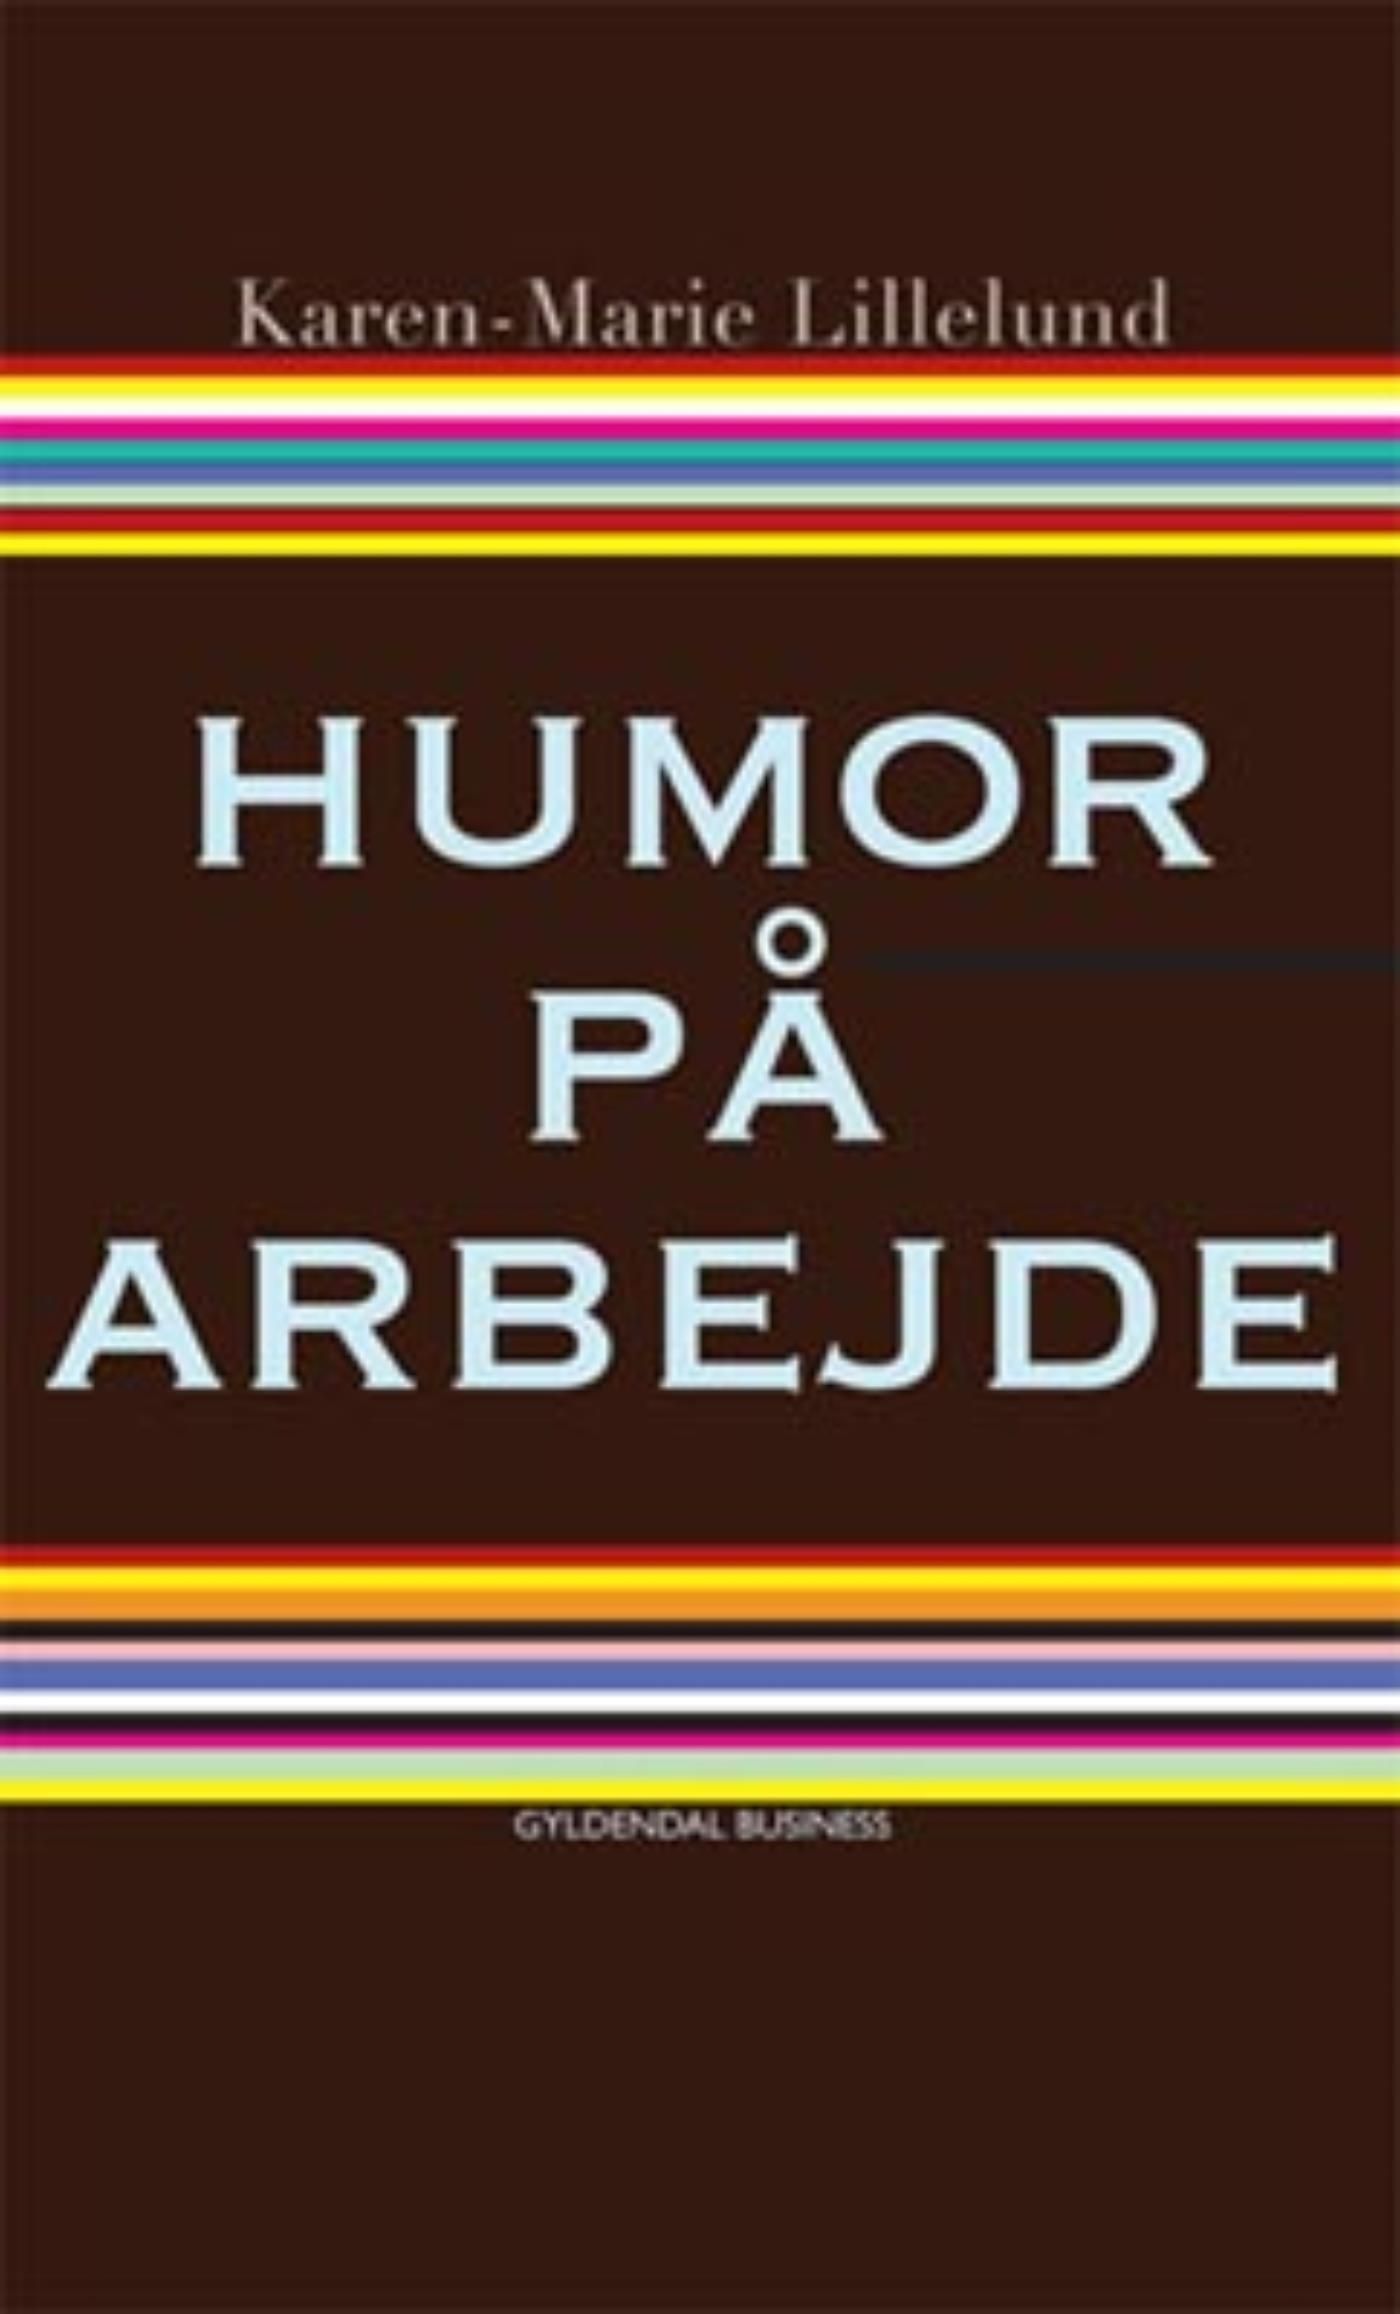 Humor på arbejde, e-bok av Karen-Marie Lillelund